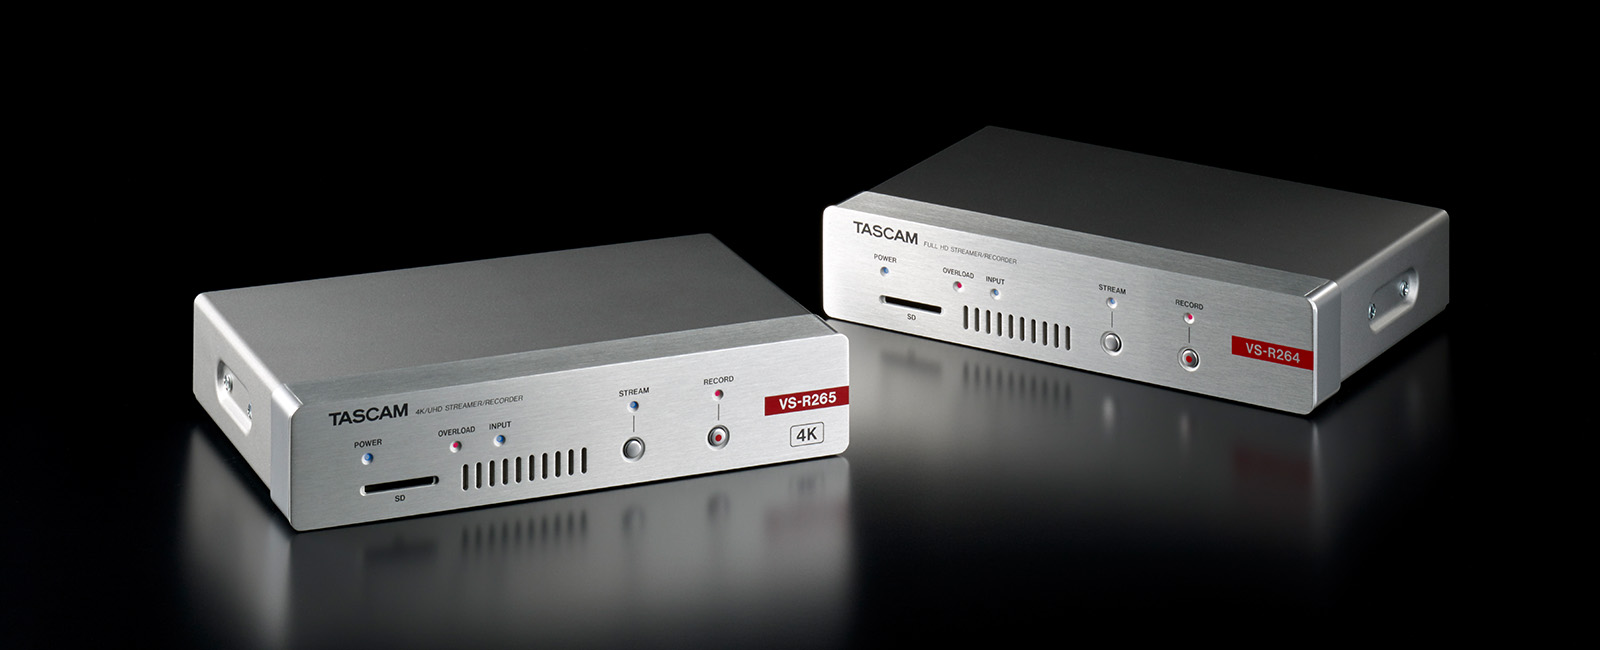 V1.1 Firmware for TASCAM VS-R264 (Full HD) and VS-R265 (4K-UHD) Video Streamer/Recorders